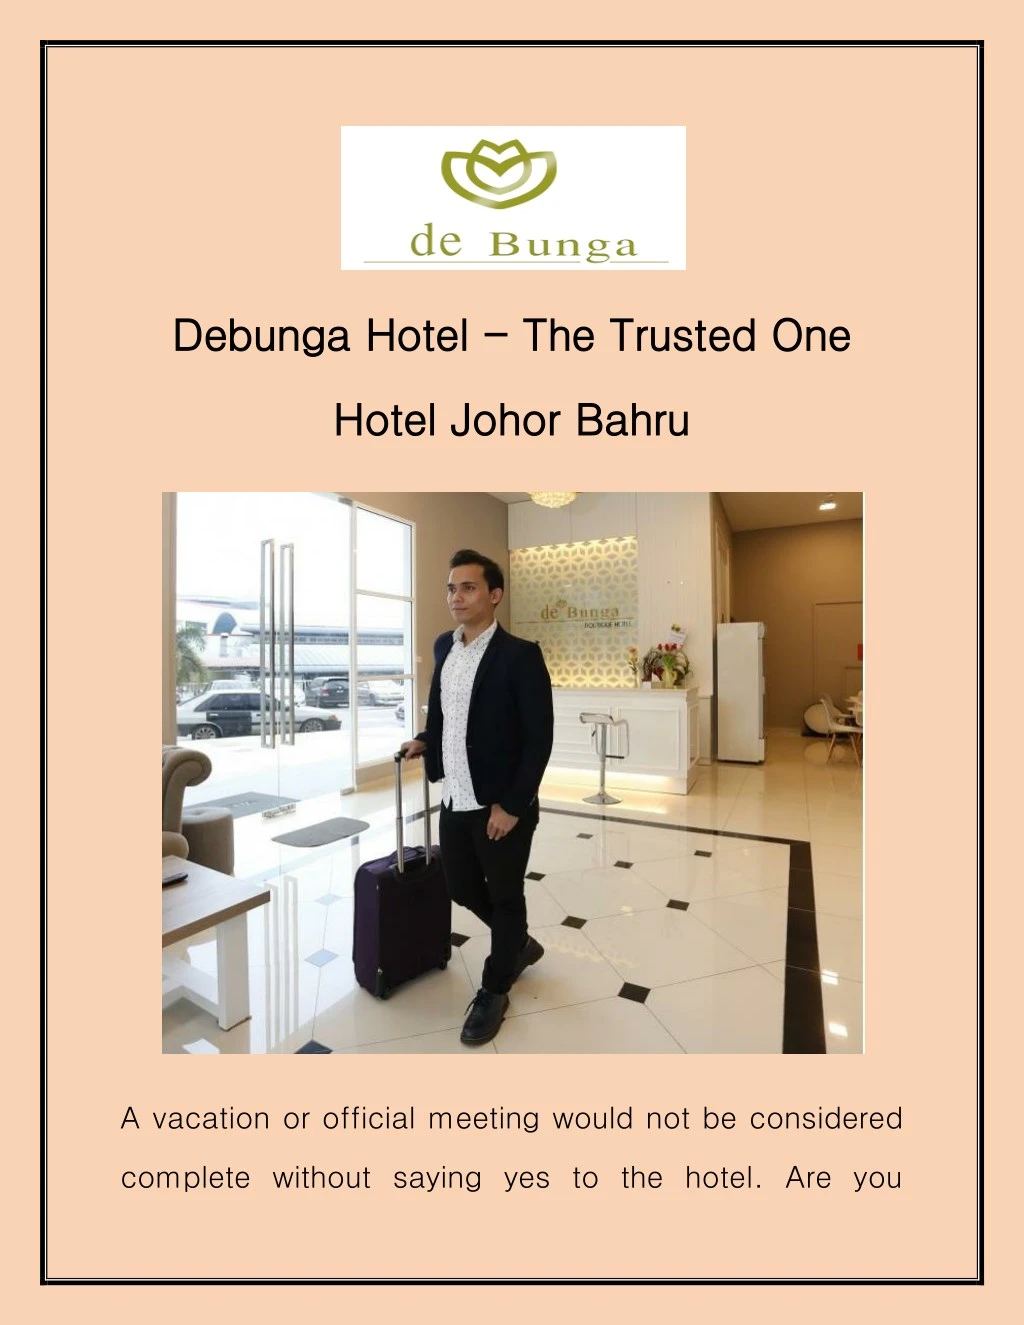 debunga hotel debunga hotel the trusted one n.